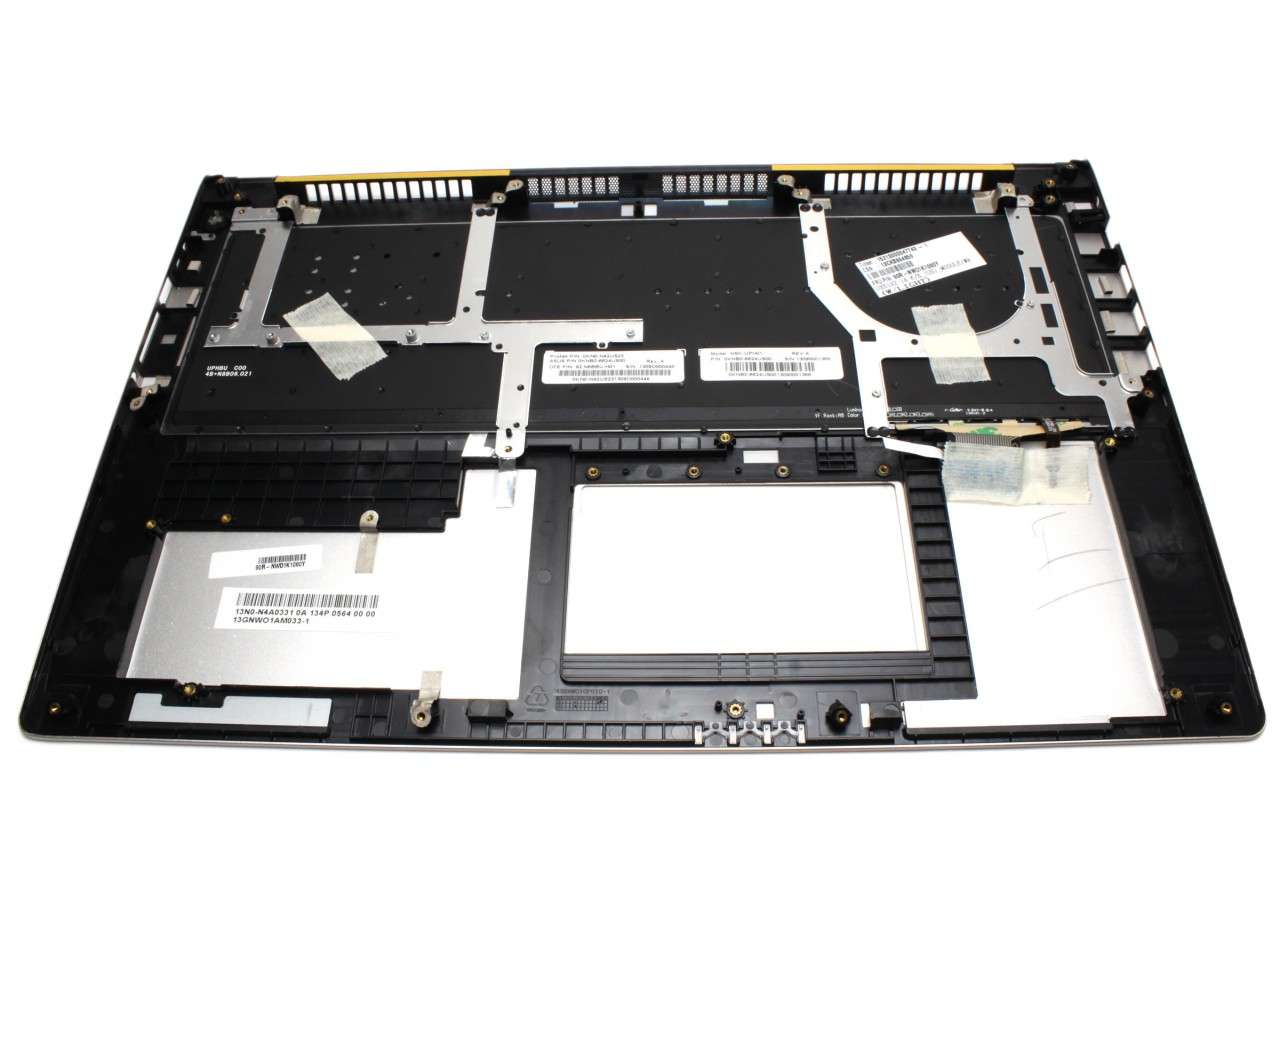 Tastatura Asus 0KNB0-6624US00 neagra cu Palmrest argintiu iluminata backlit